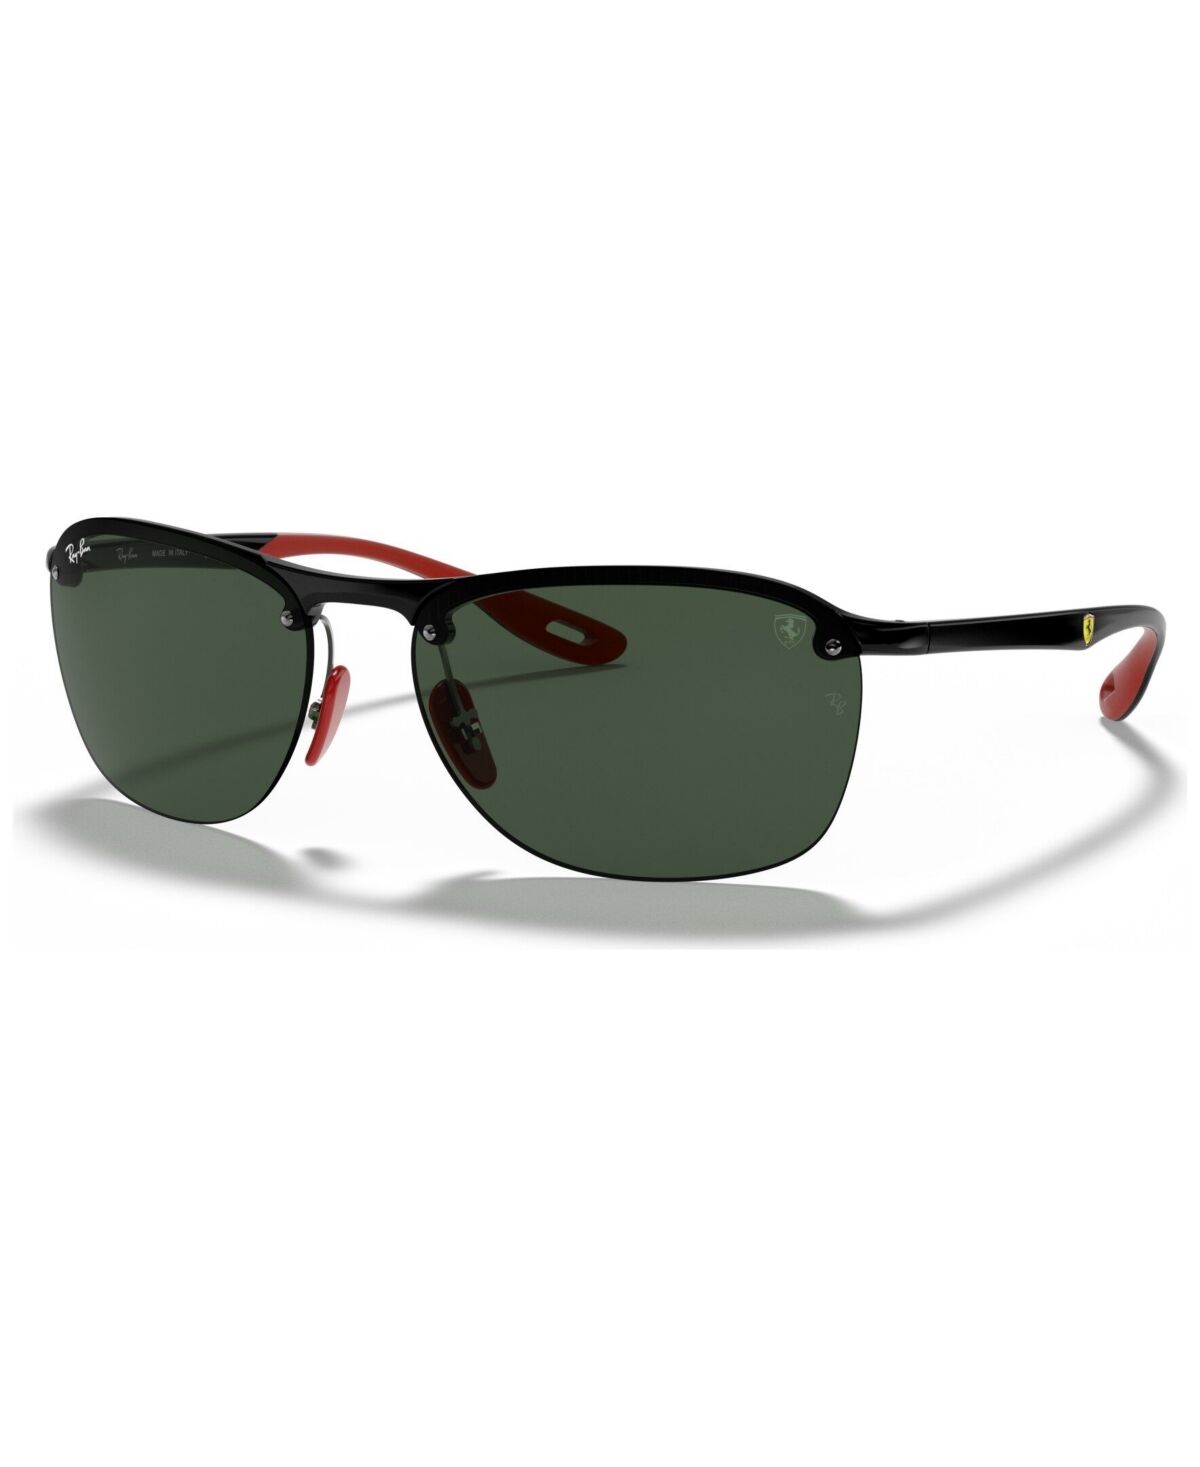 Ray-Ban Men's Sunglasses, RB4302M Scuderia Ferrari Collection 62 - BLACK/DARK GREEN